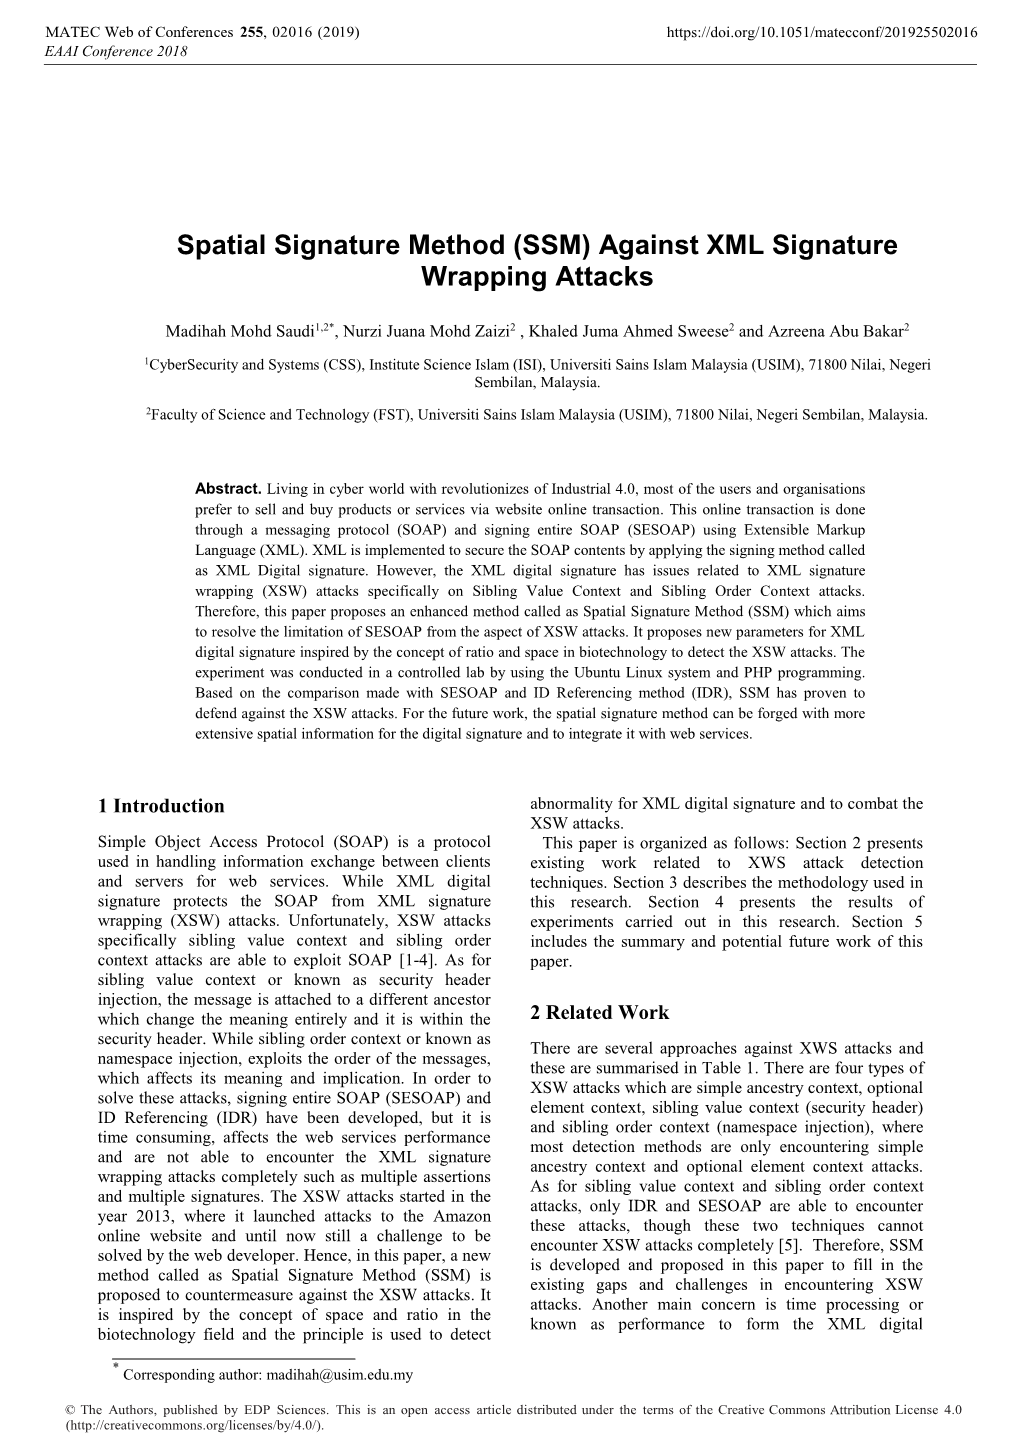 SSM) Against XML Signature Wrapping Attacks